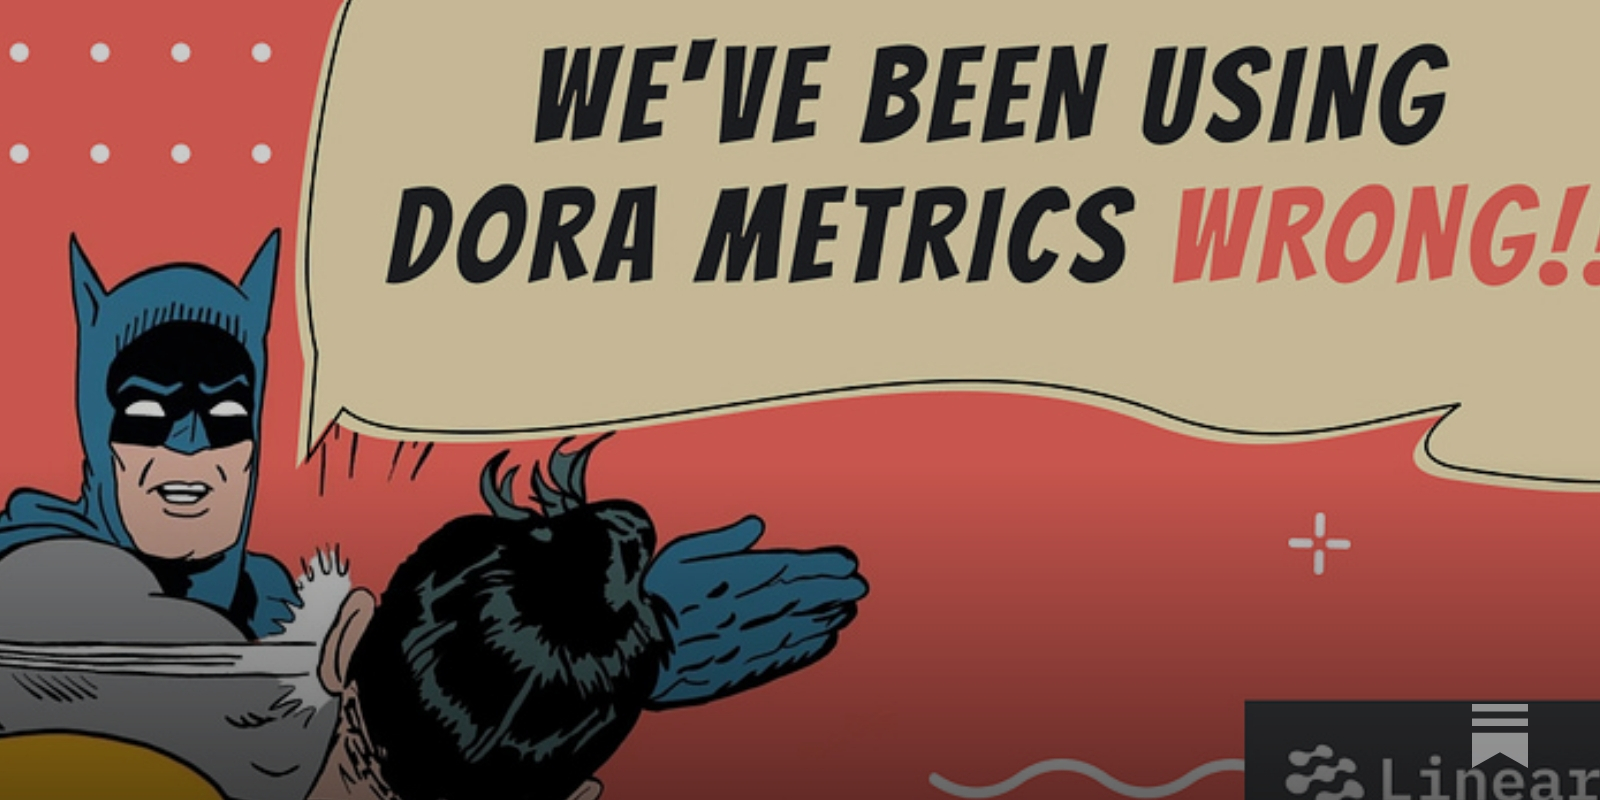 DORA Metrics: We've Been Using Them Wrong